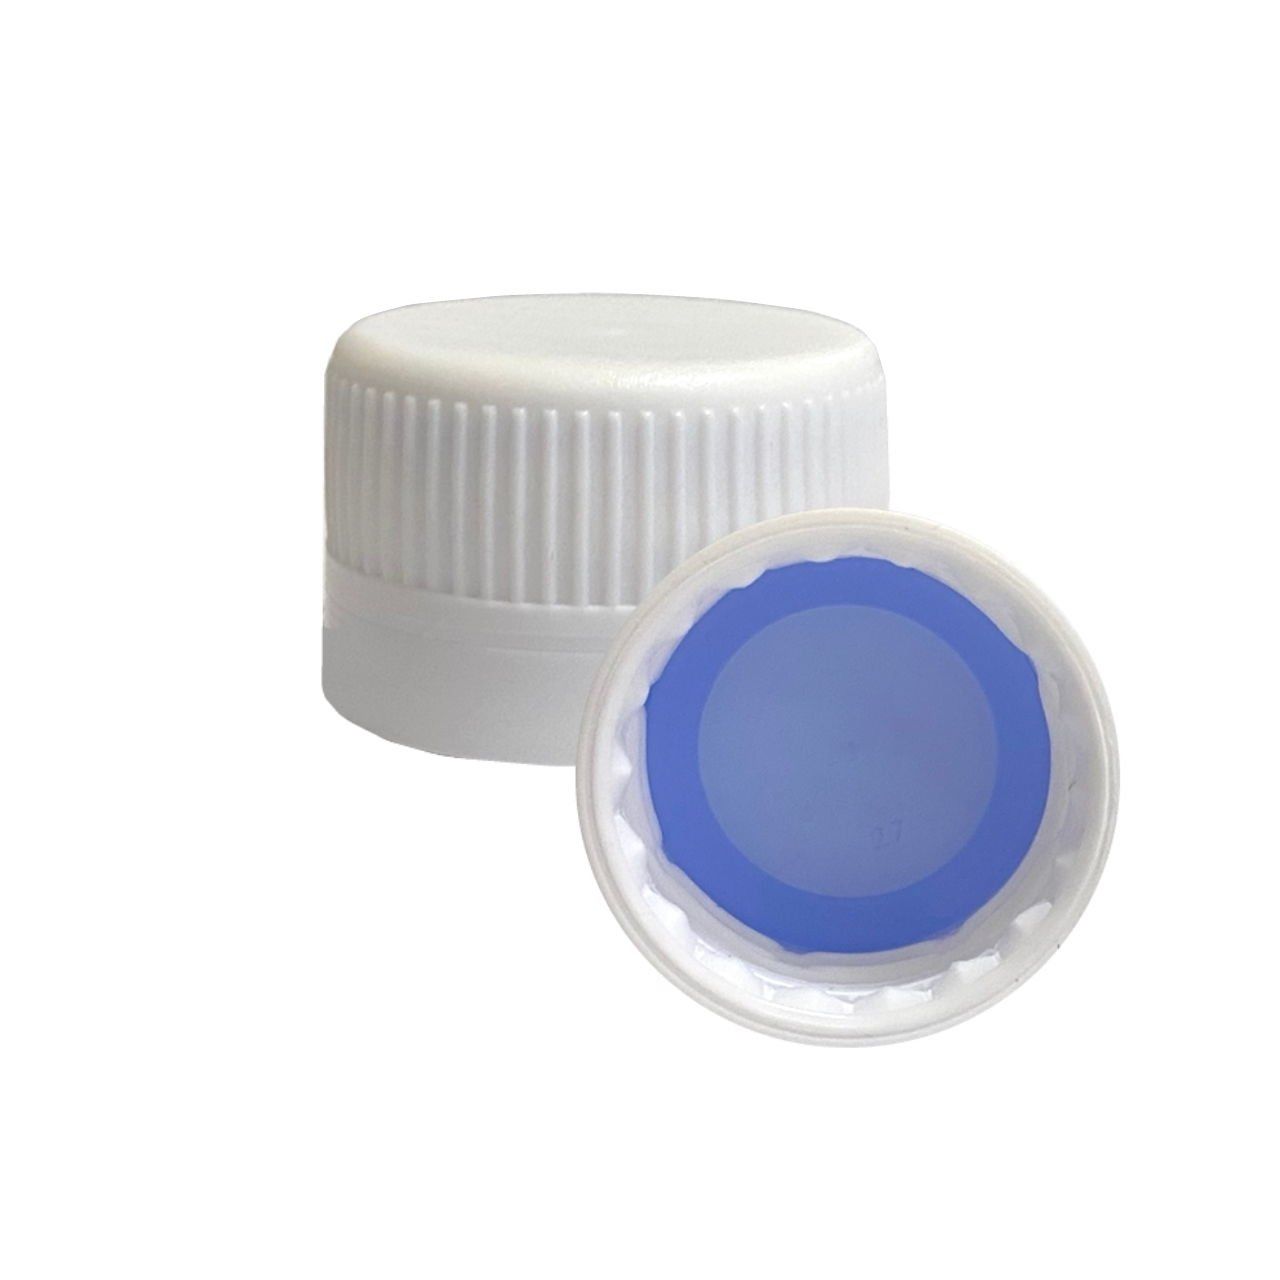 28pp Beyaz Kilitli Kapak - Mavi Plastik Contalı - 28 mm Çap - 28mm Ağızlı Şişeler İçin Uygundur